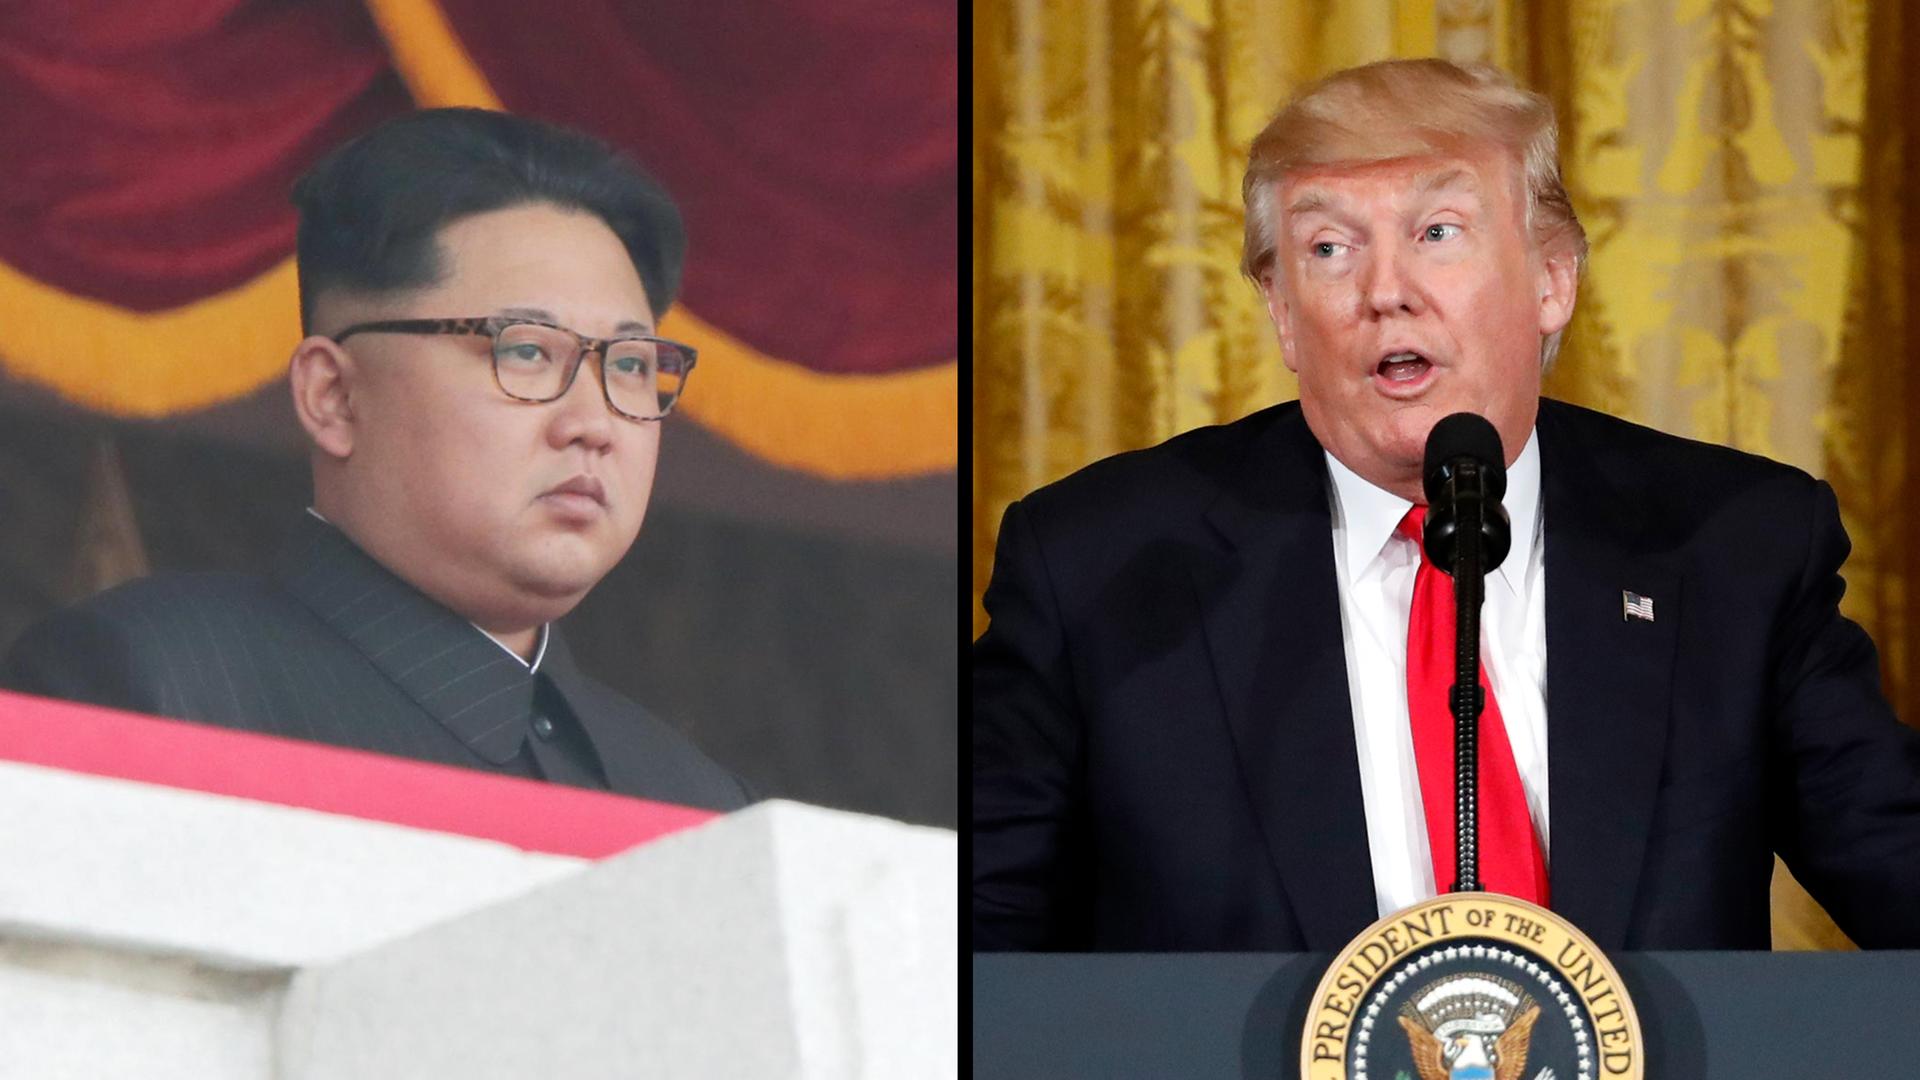 Nordkoreas Machthaber Kim und US-Präsident Trump gegenübergestellt